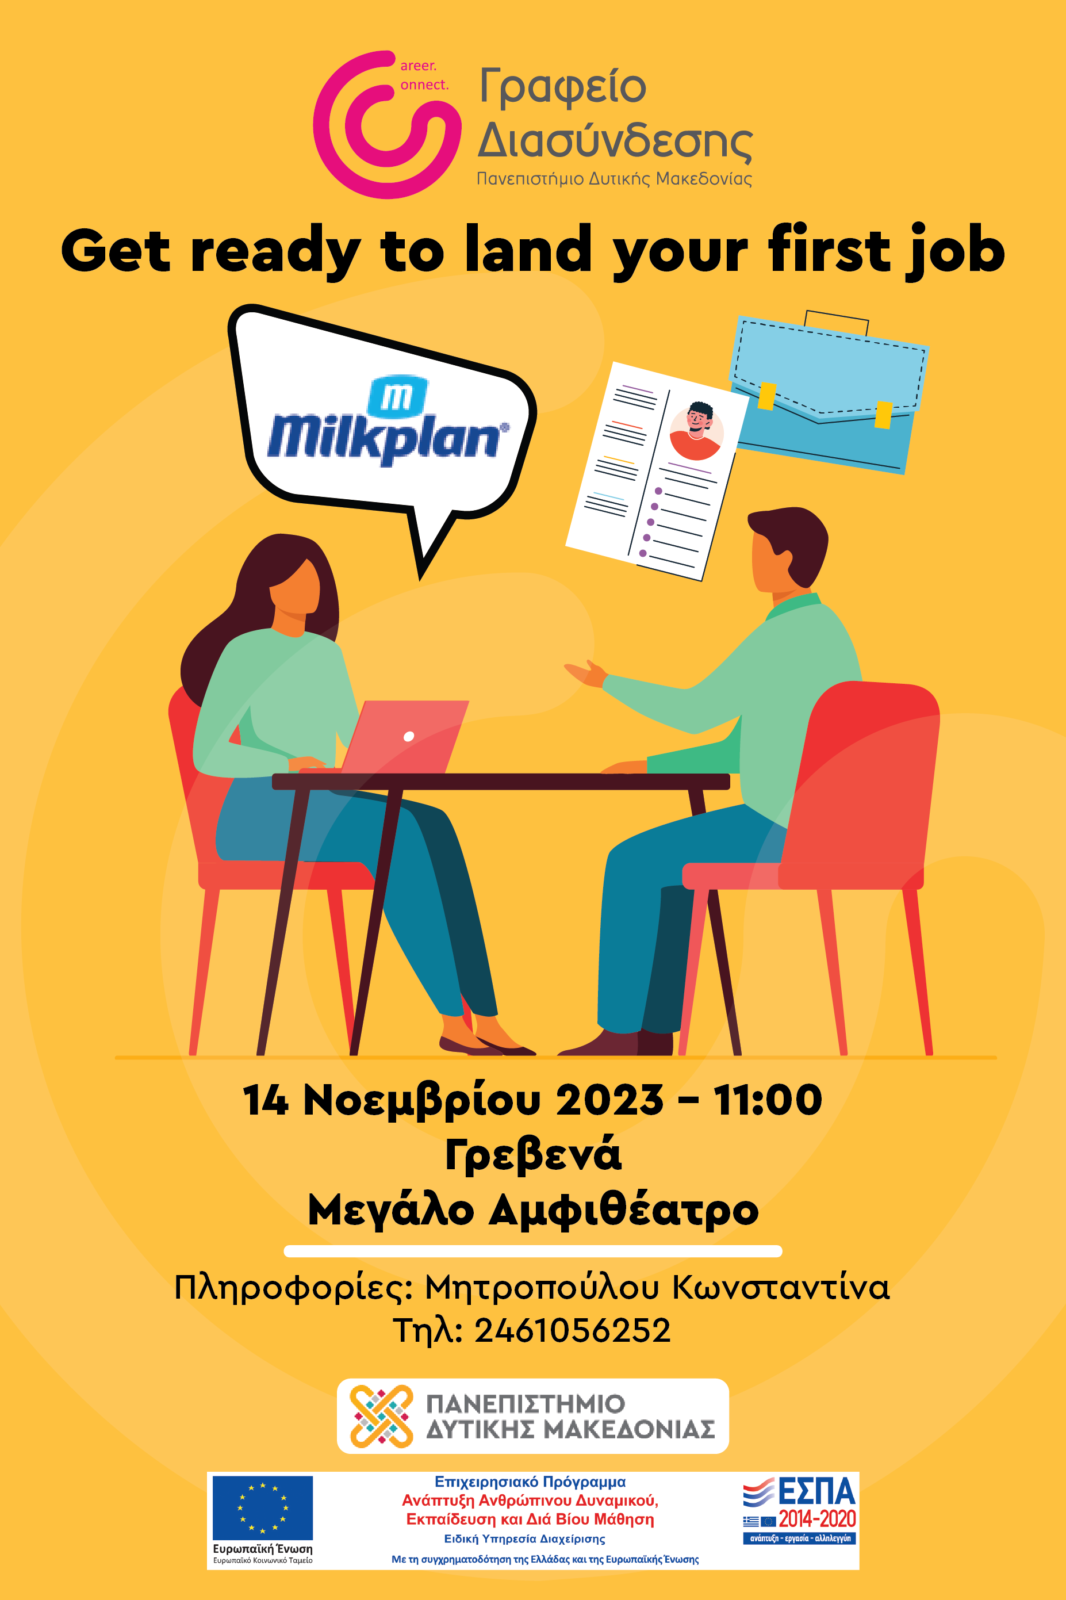 Πανεπιστήμιο Δυτικής Μακεδονίας: “Get ready to land your first job” την Τρίτη 4 Νοεμβρίου στα Γρεβενά